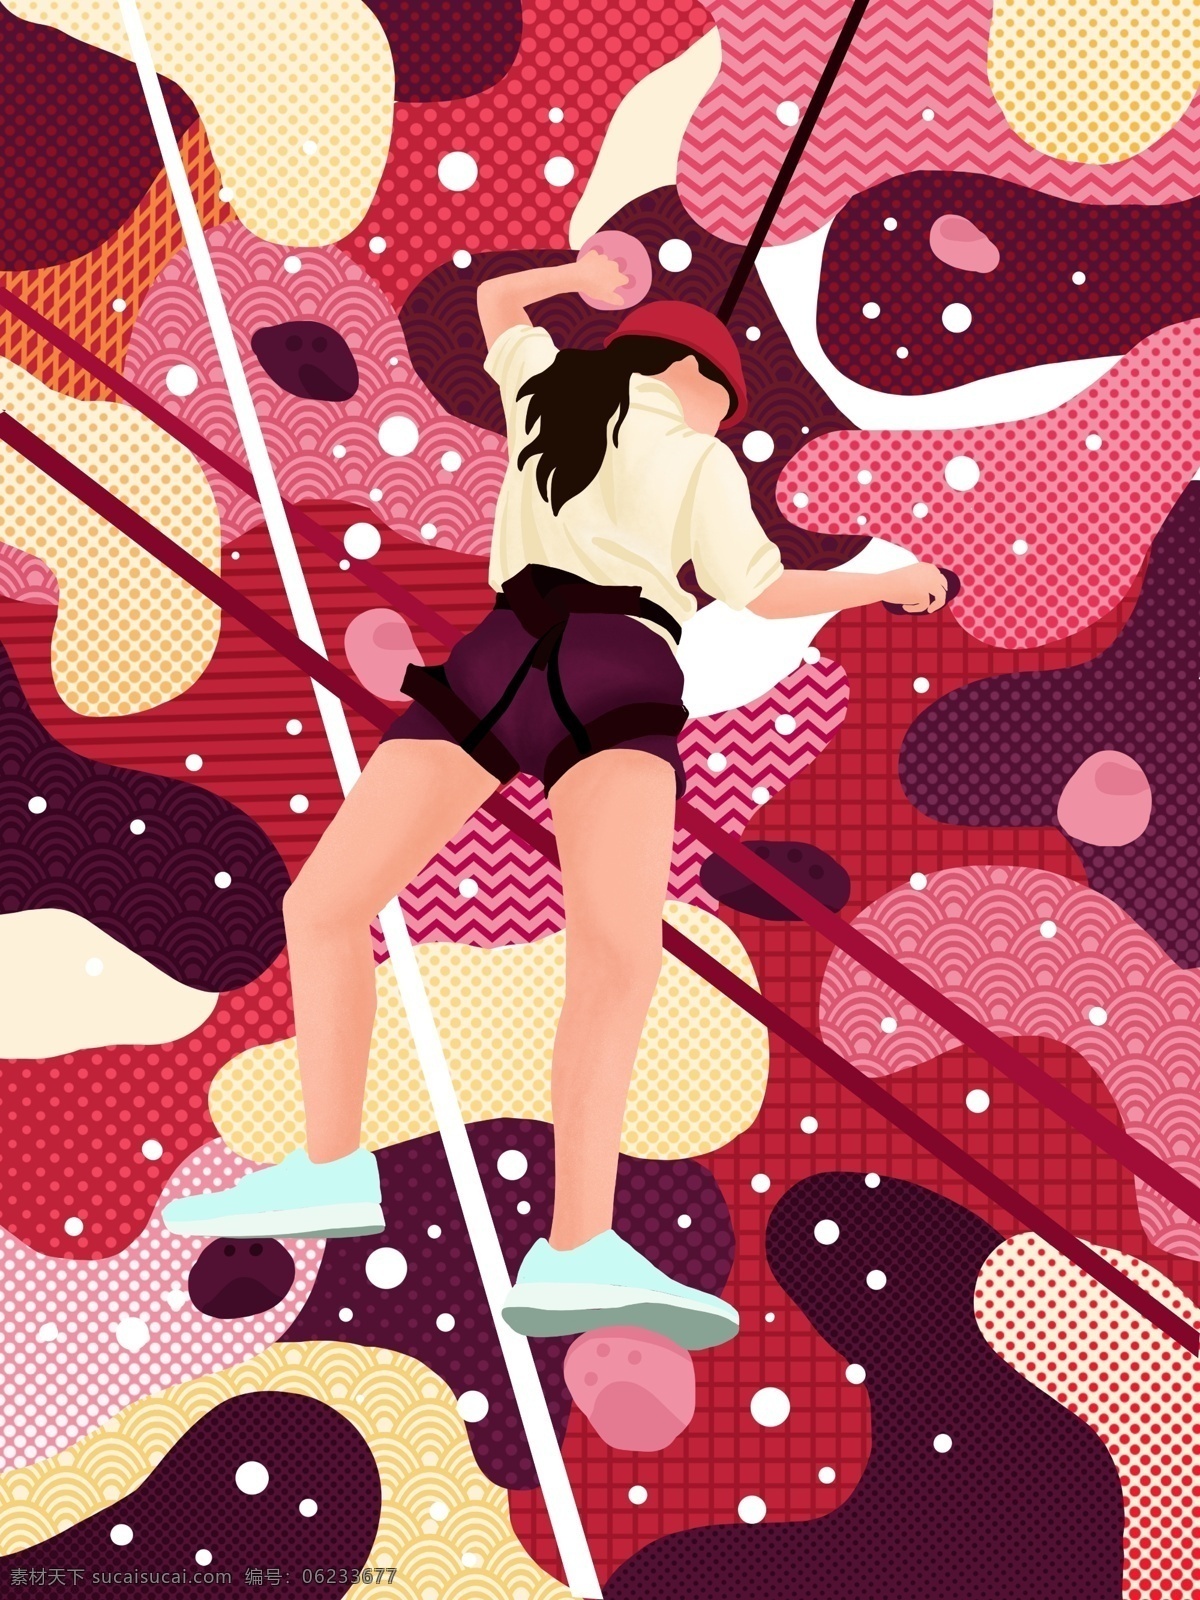 红色 游走 梦 运动 系 女孩 攀岩 抽象 插画 抽象插画 微信用图 游走的梦 运动系 运动系插画